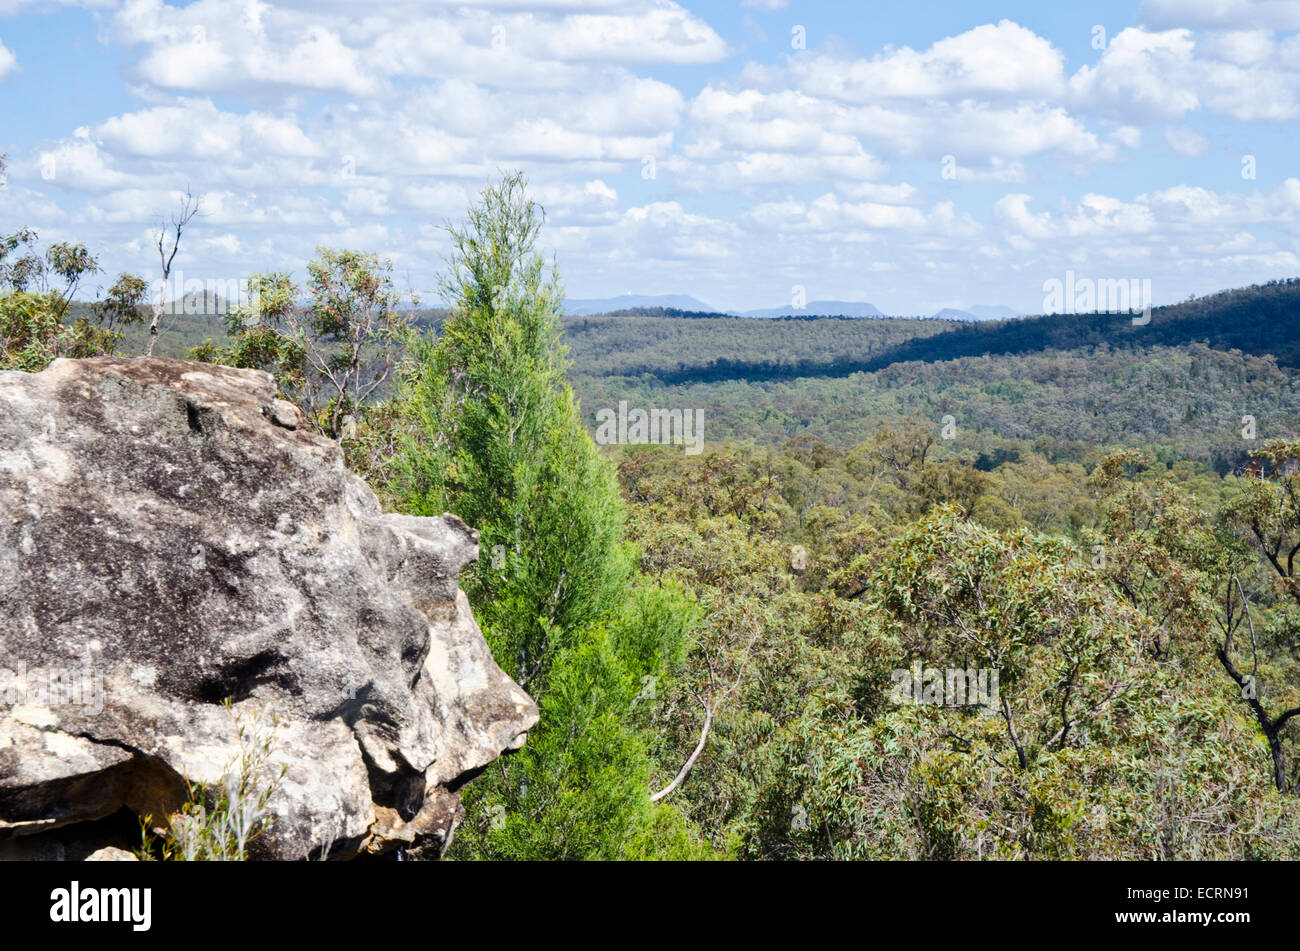 Pilliga National Park NSW Australia aka The Pilliga Scrub Stock Photo